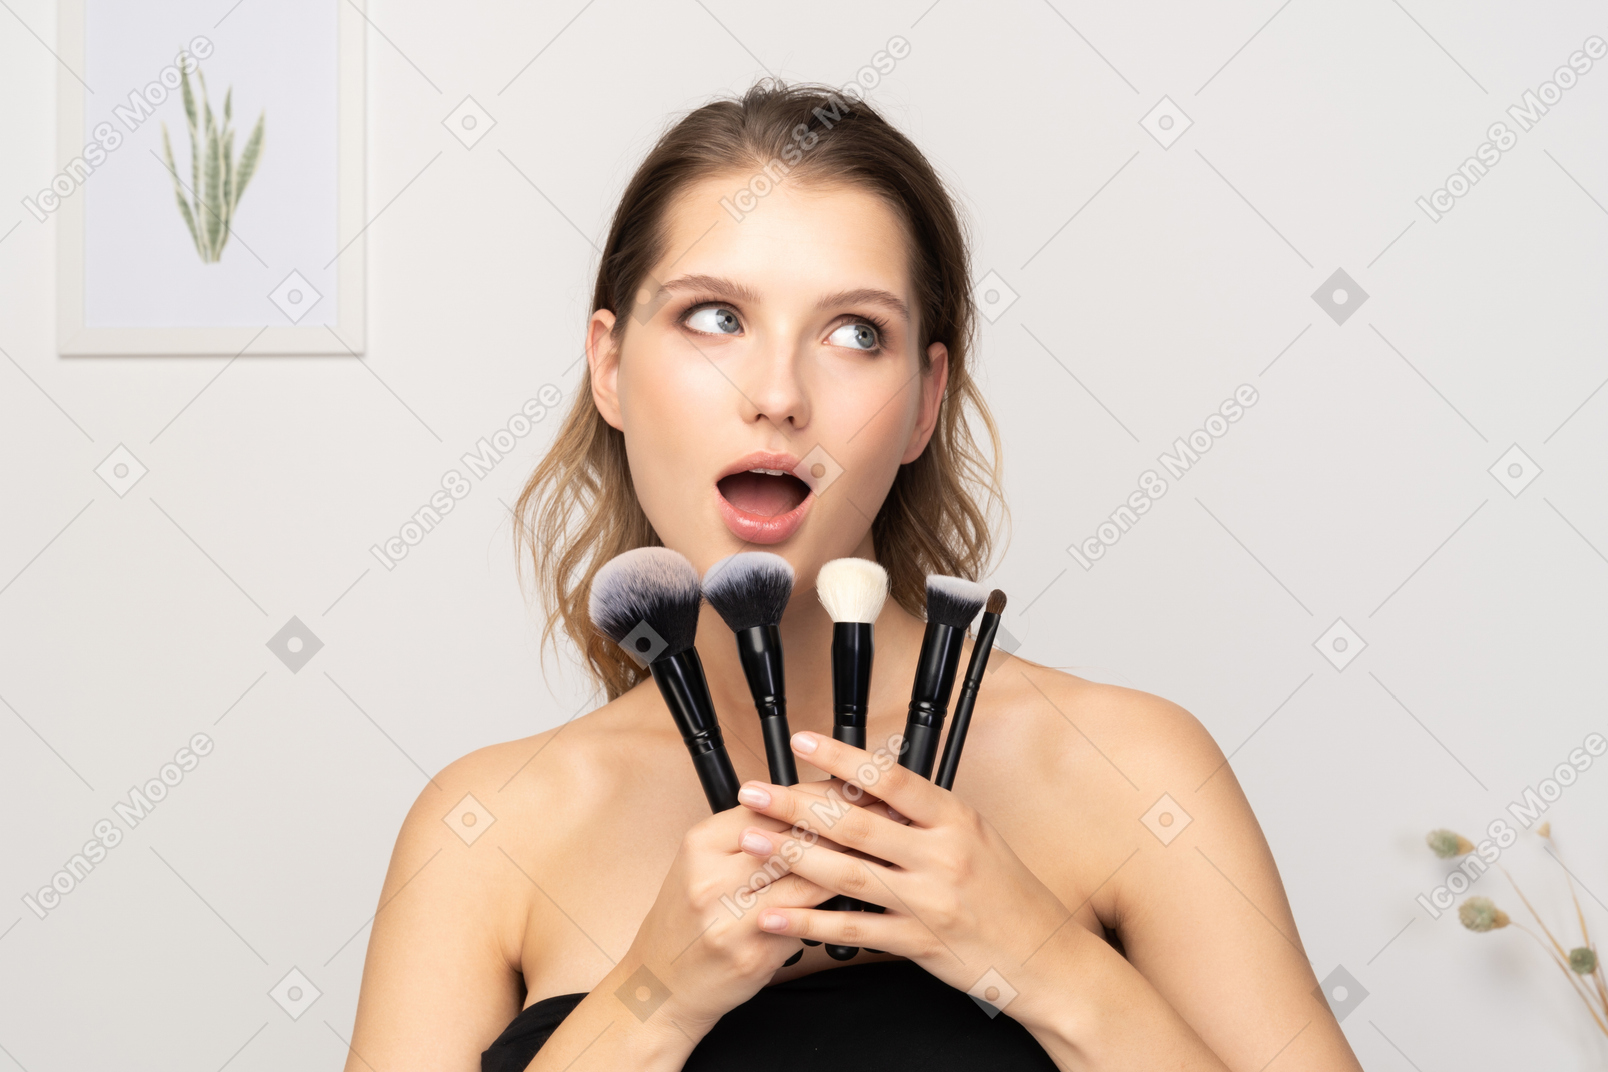 Vista frontal de una mujer joven sorprendida sosteniendo pinceles de maquillaje